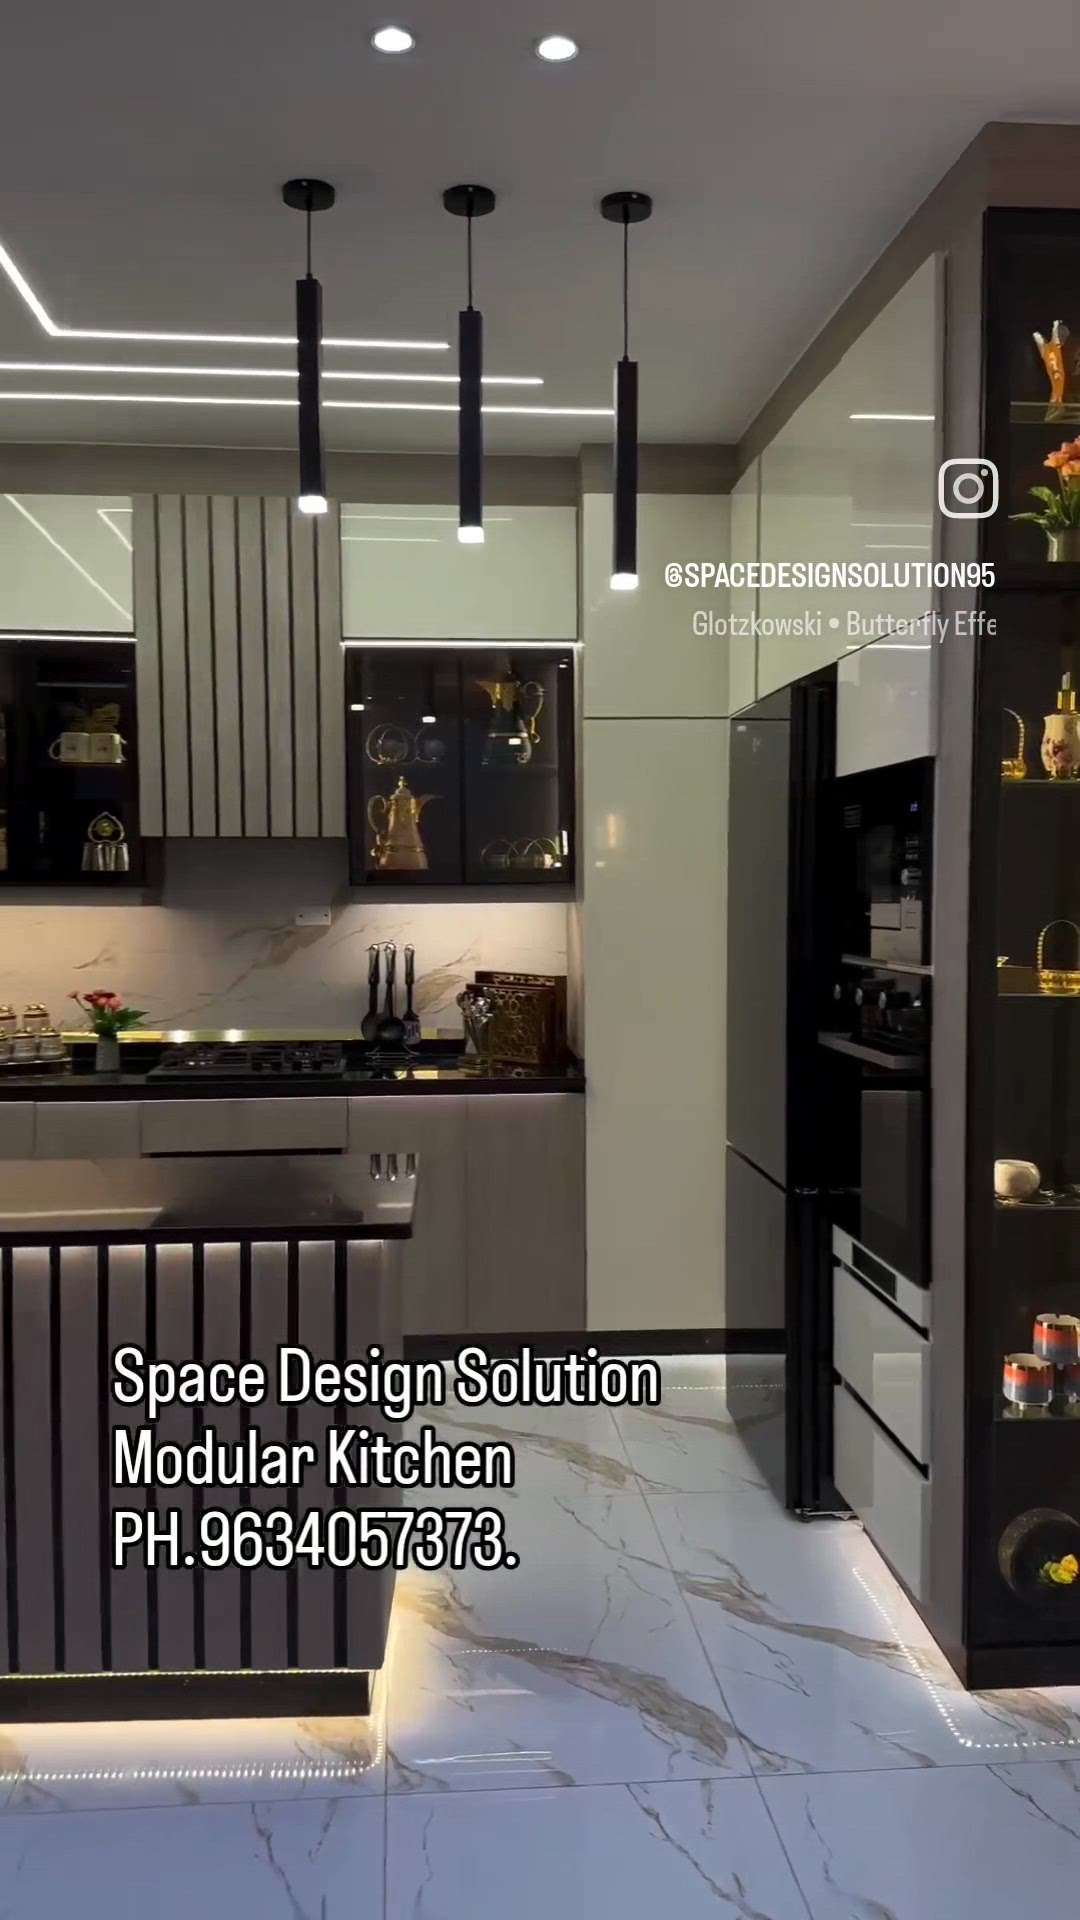 #luxuryinterior  #luxuryhomes  #ModularKitchen  #architecture  #interiordesign  #Space  #design  #solution 
Spacedesign95@gmail.com 
www.spacedesignsolution.com 
ph.9634057373